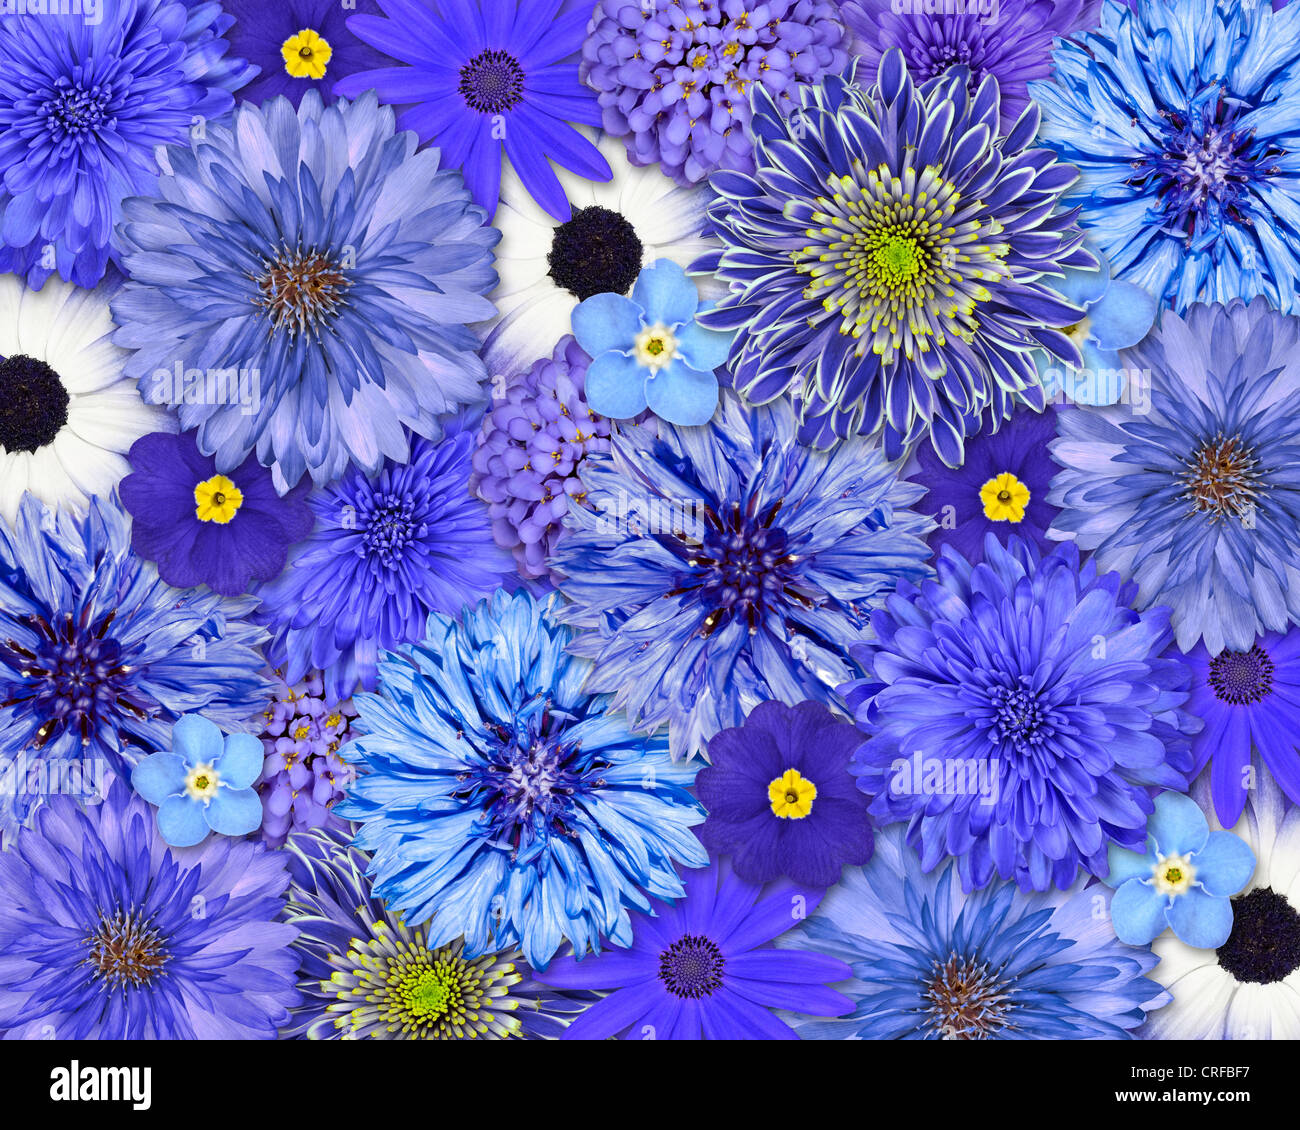 Collection de fleurs fond violet bleu set dahlia chrysanthème bleuet centaurea cyanus iberis daisy osteospermum isolés Banque D'Images